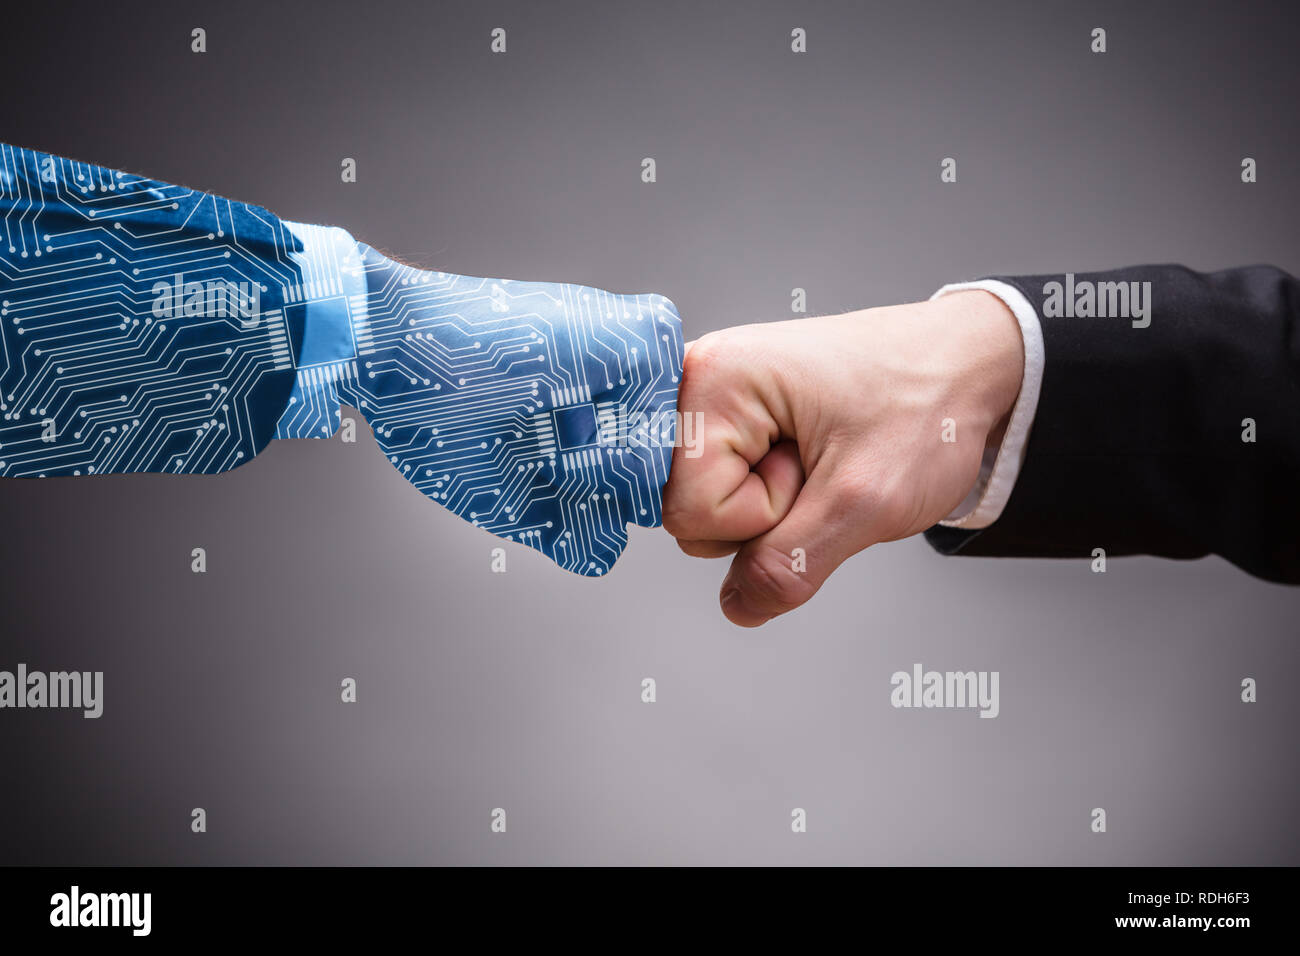 In der Nähe von Digital erzeugten menschlichen Hand und Geschäftsmann, Fist Bump auf grauem Hintergrund Stockfoto